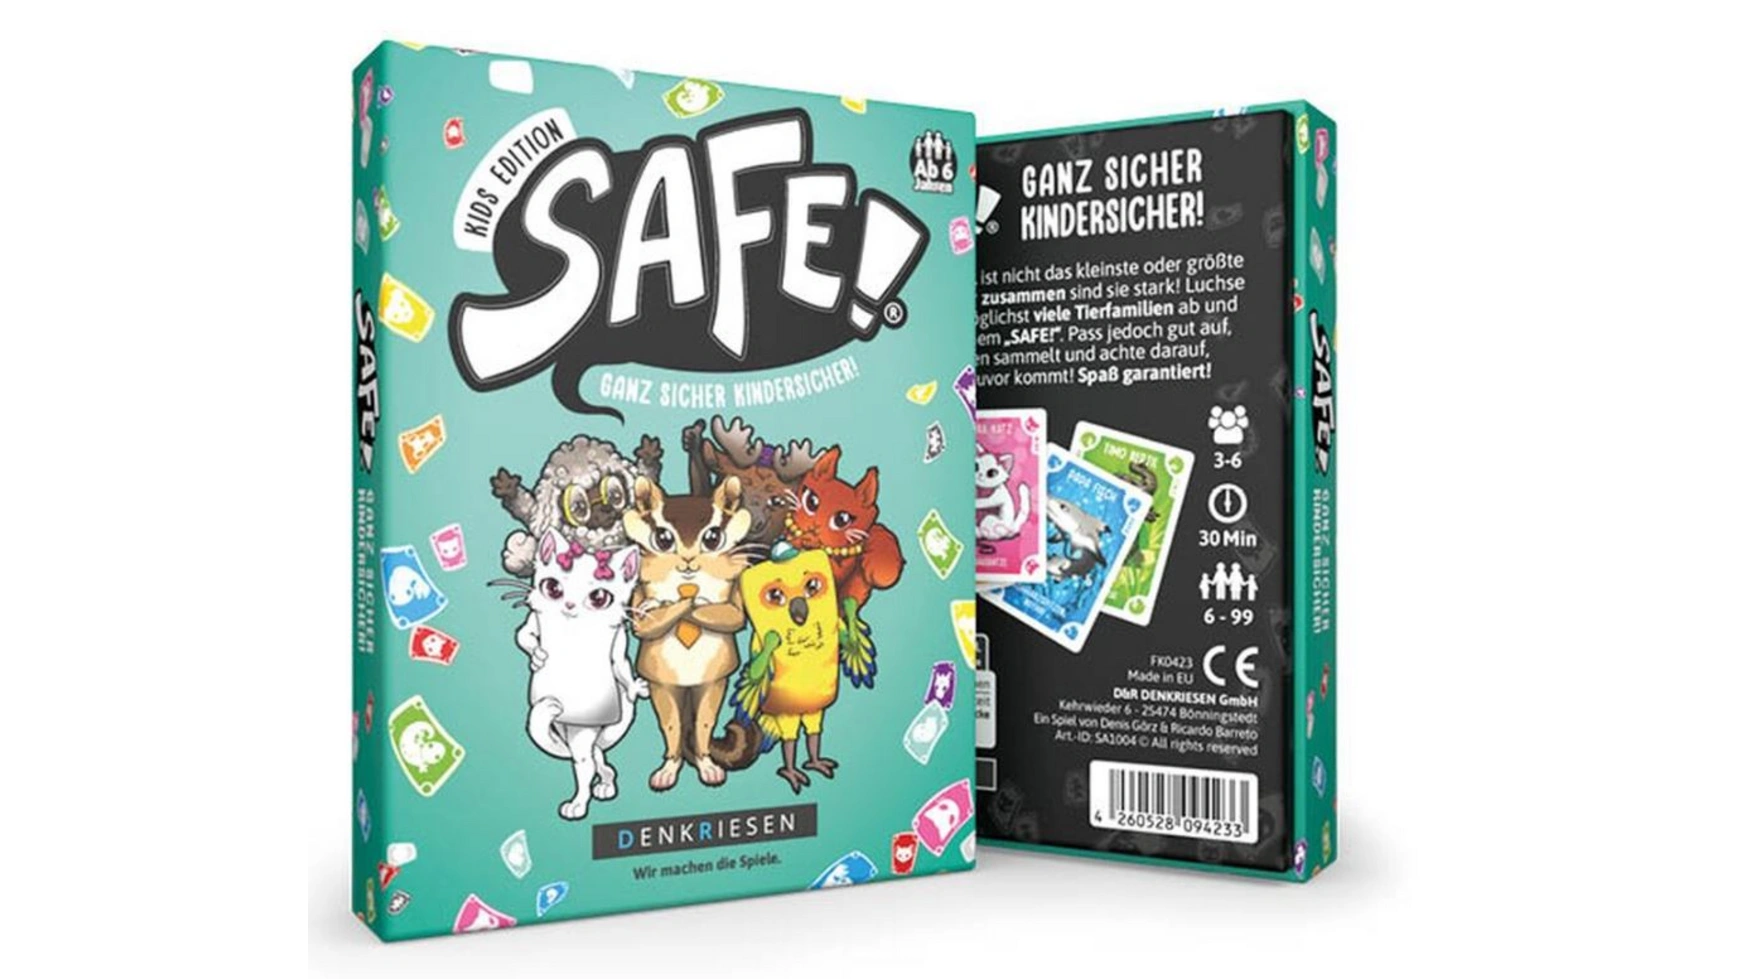 Denkriesen – безопасно! Kids Edition Определенно безопасно для детей!